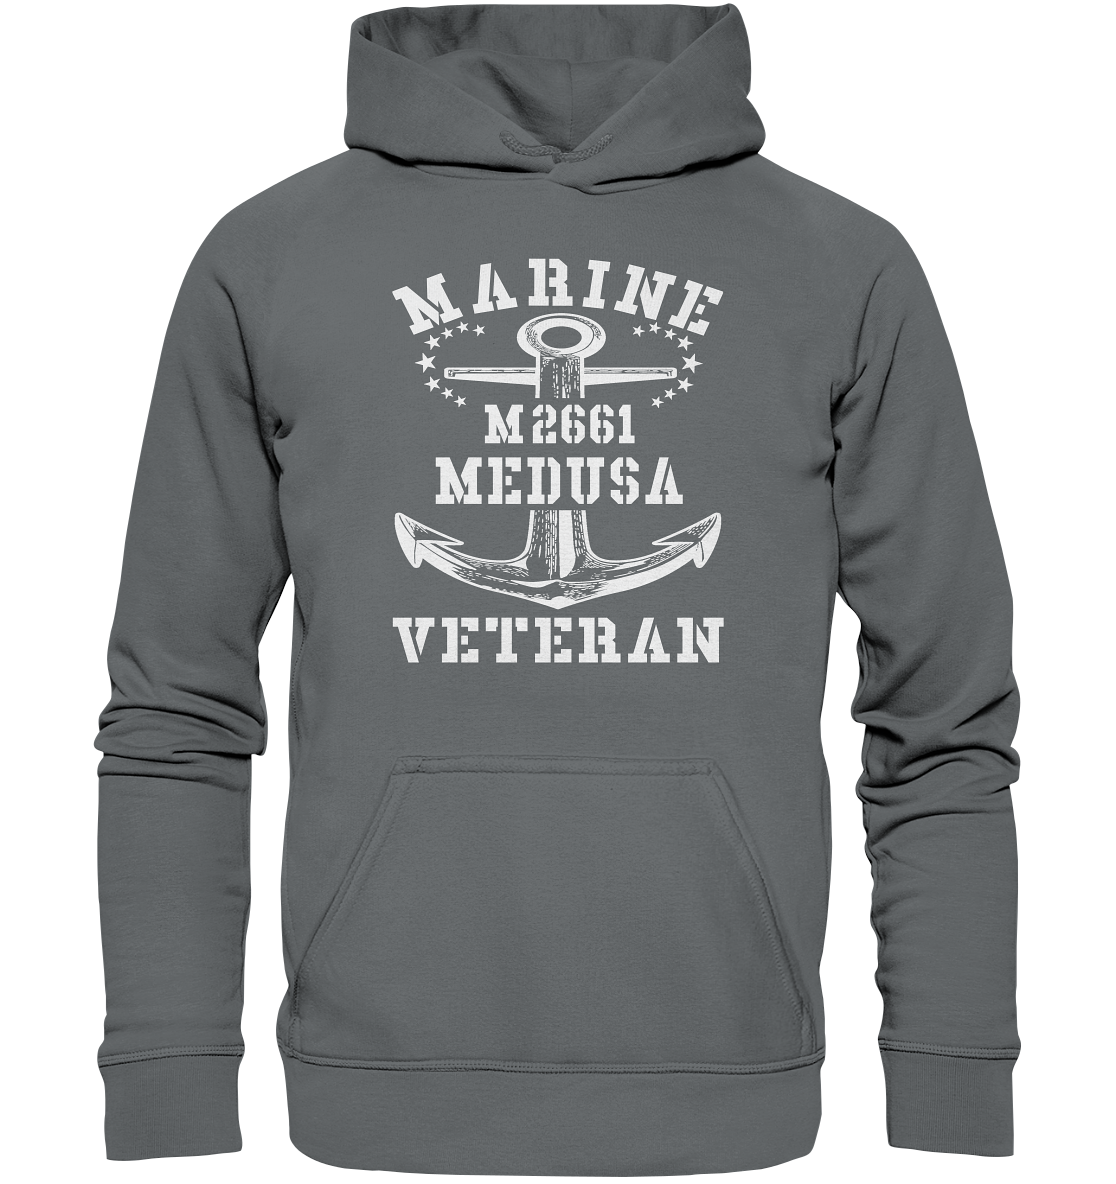 BiMi M2661 MEDUSA Marine Veteran - Basic Unisex Hoodie